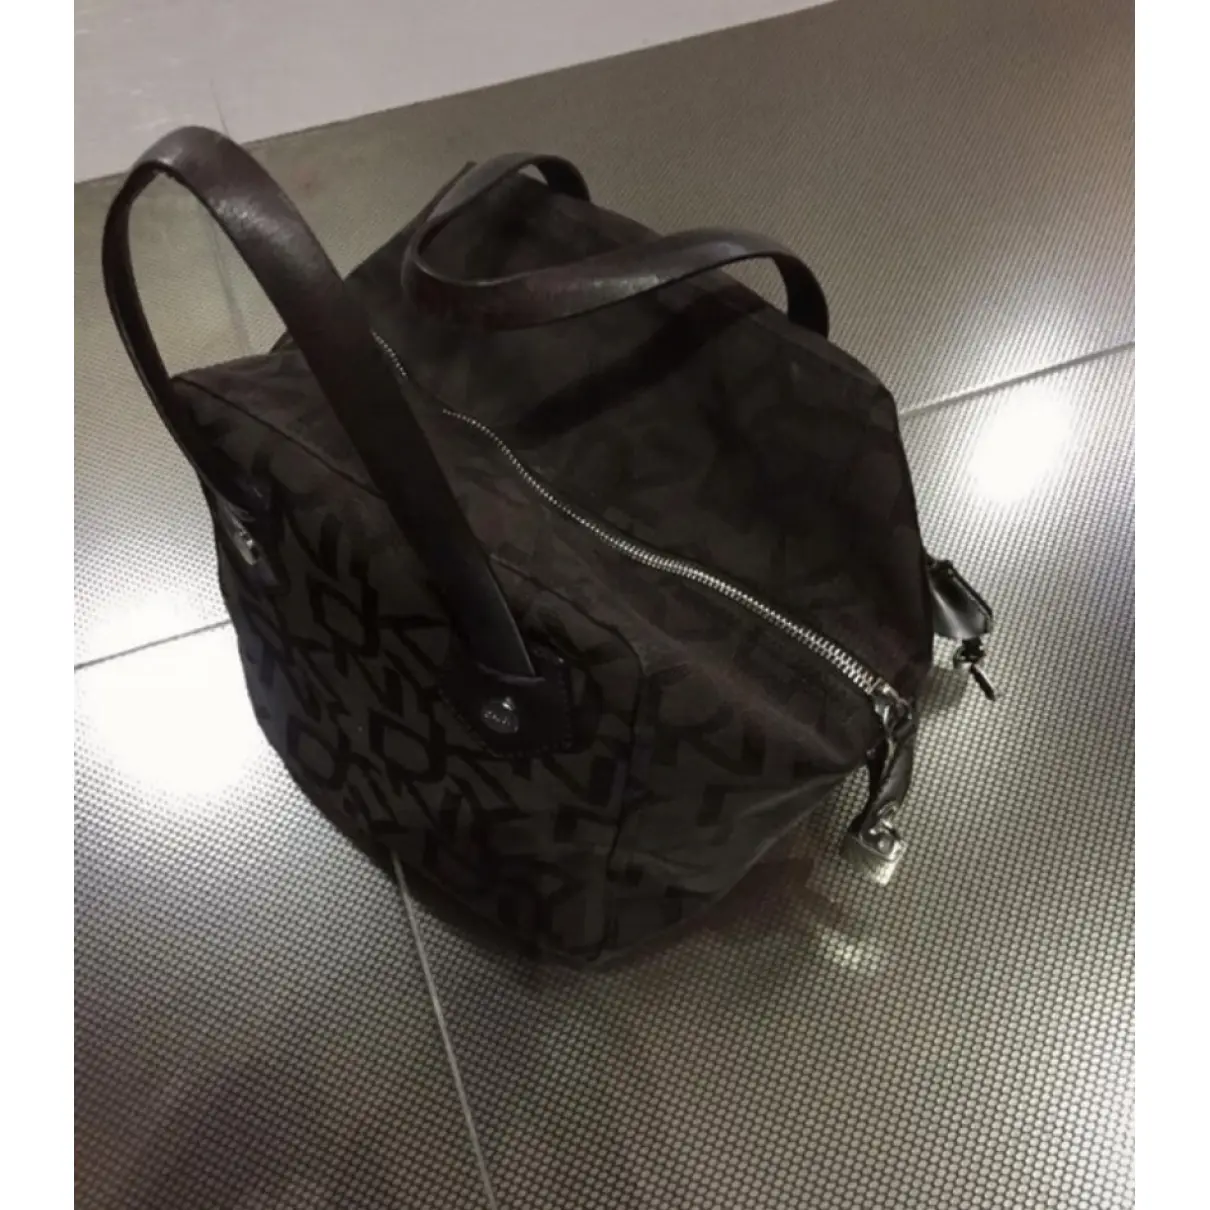 Buy Dkny Cloth handbag online